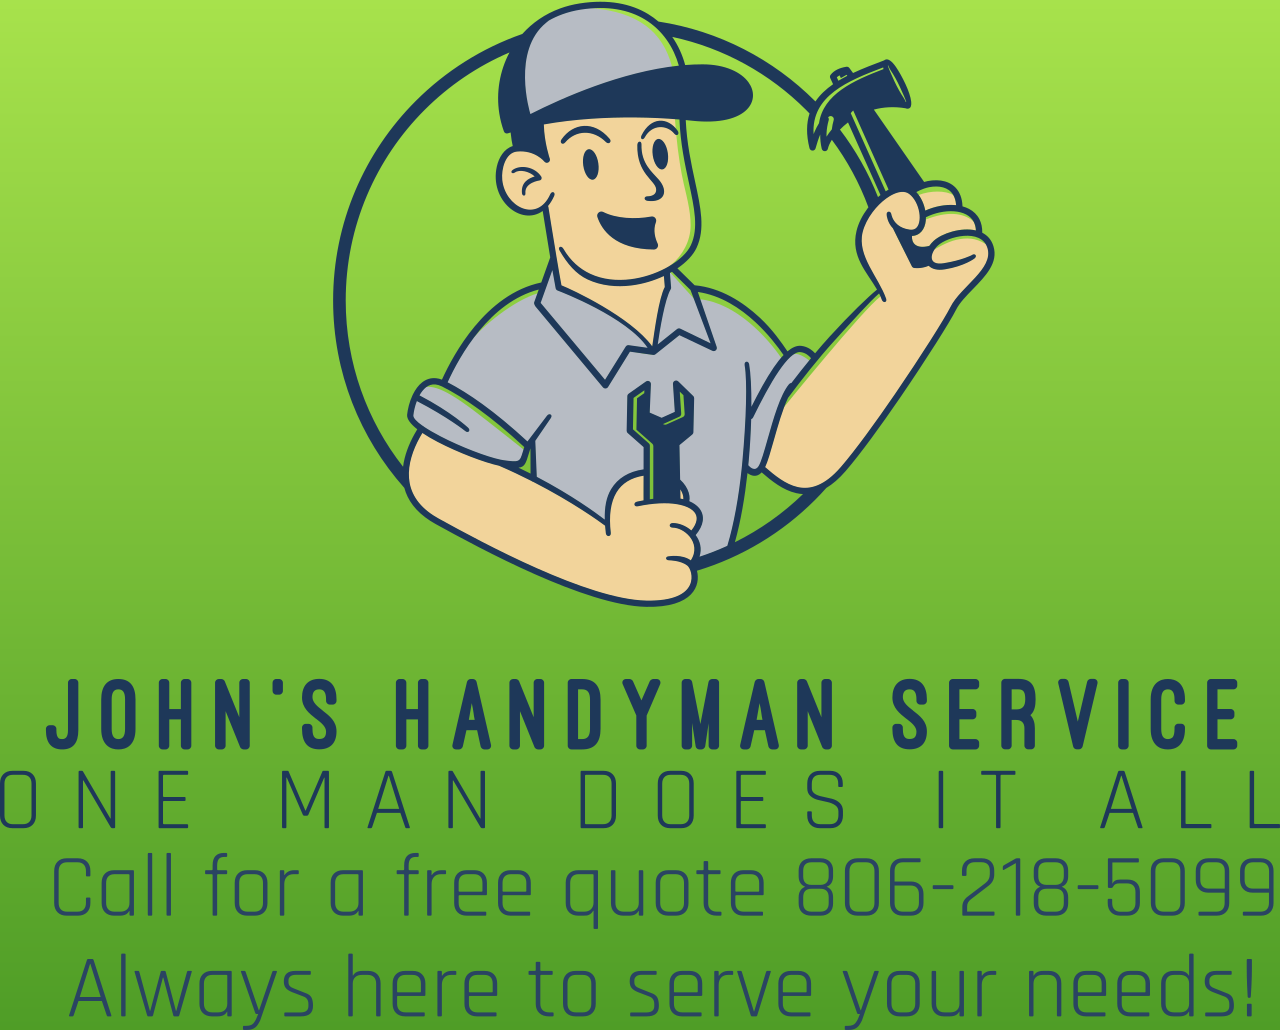 John's handyman service 's web page